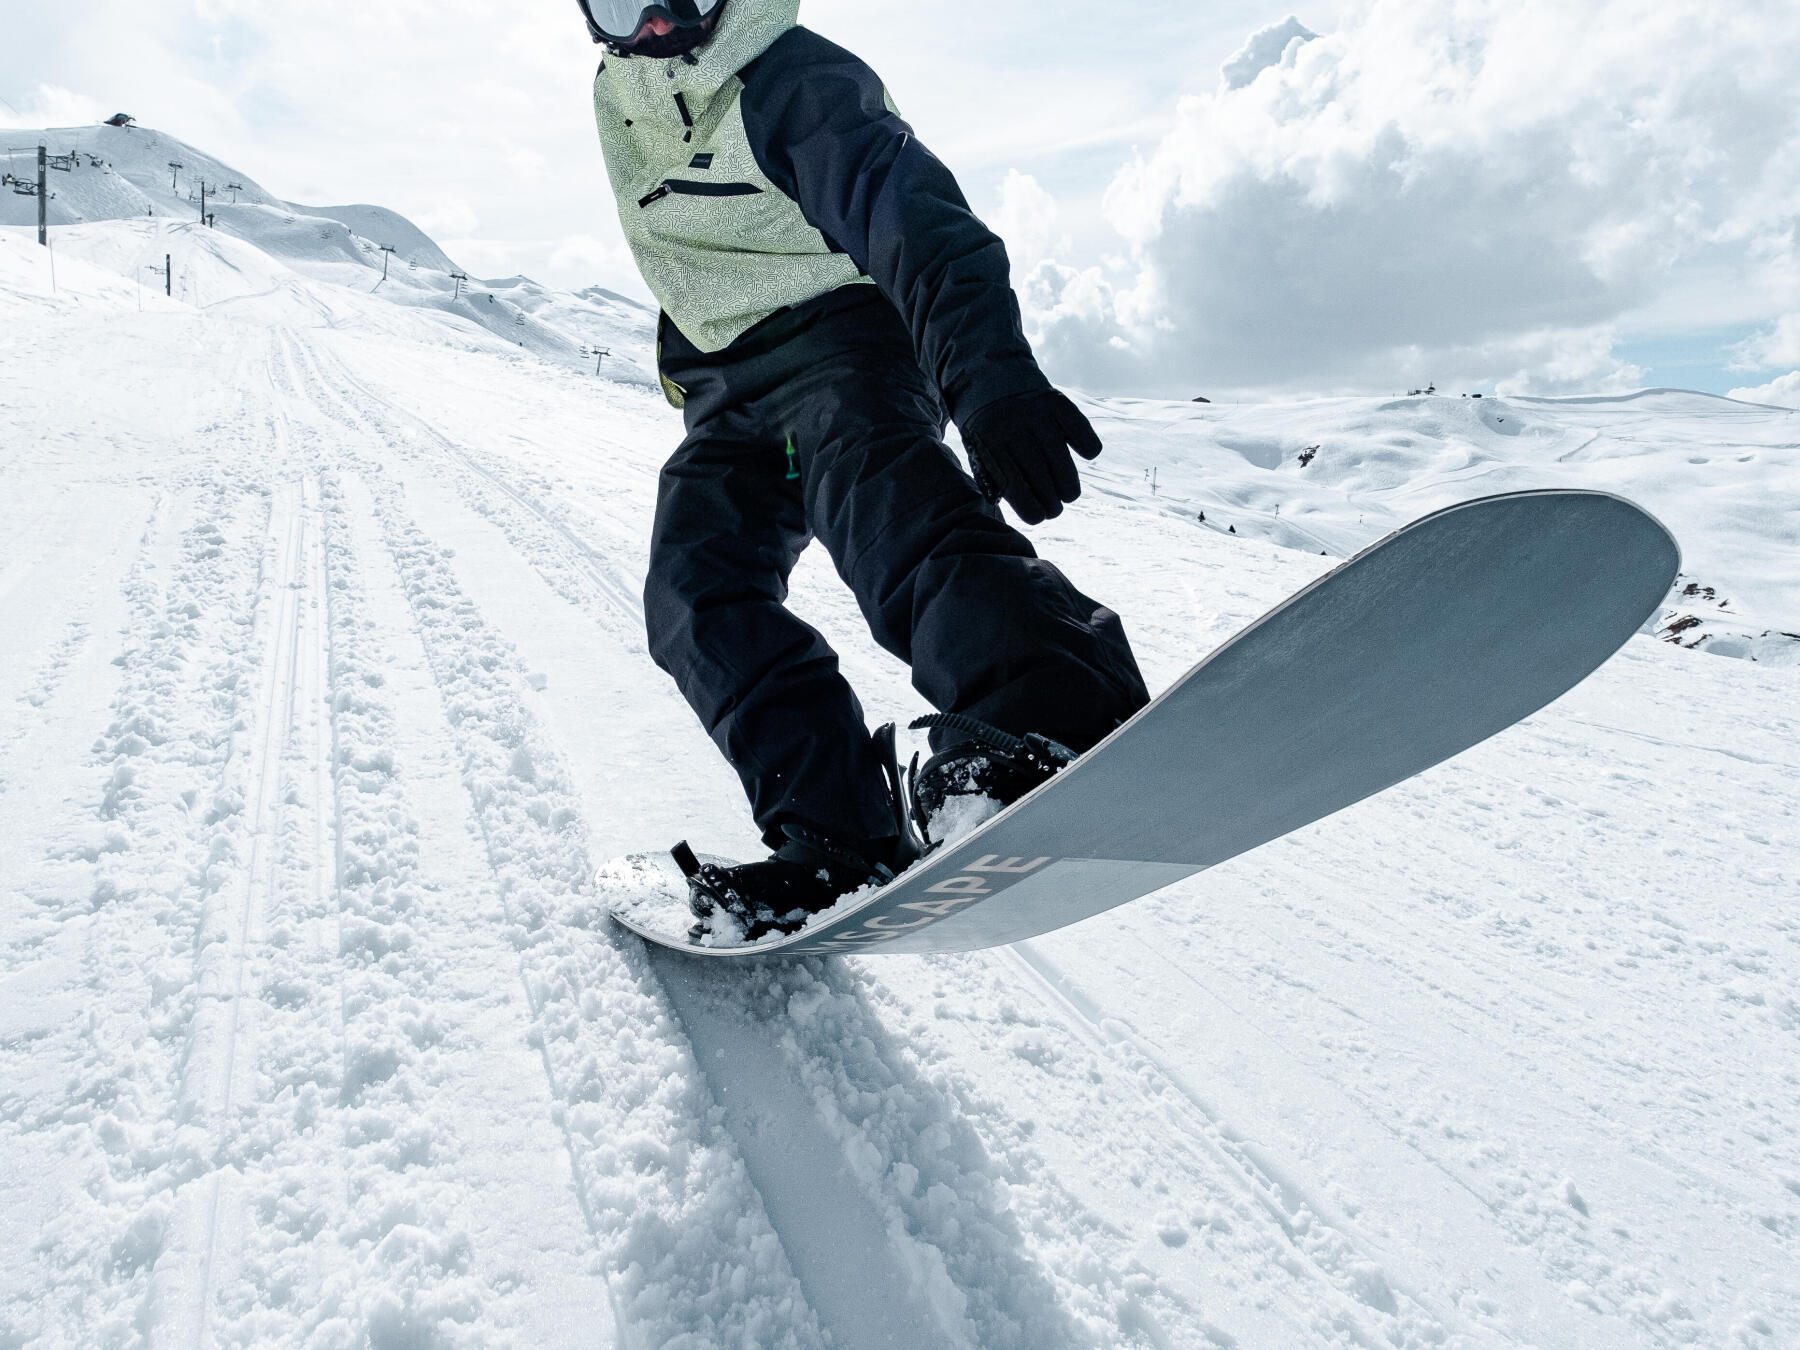 Comment faire un 50-50 en snowboard ?